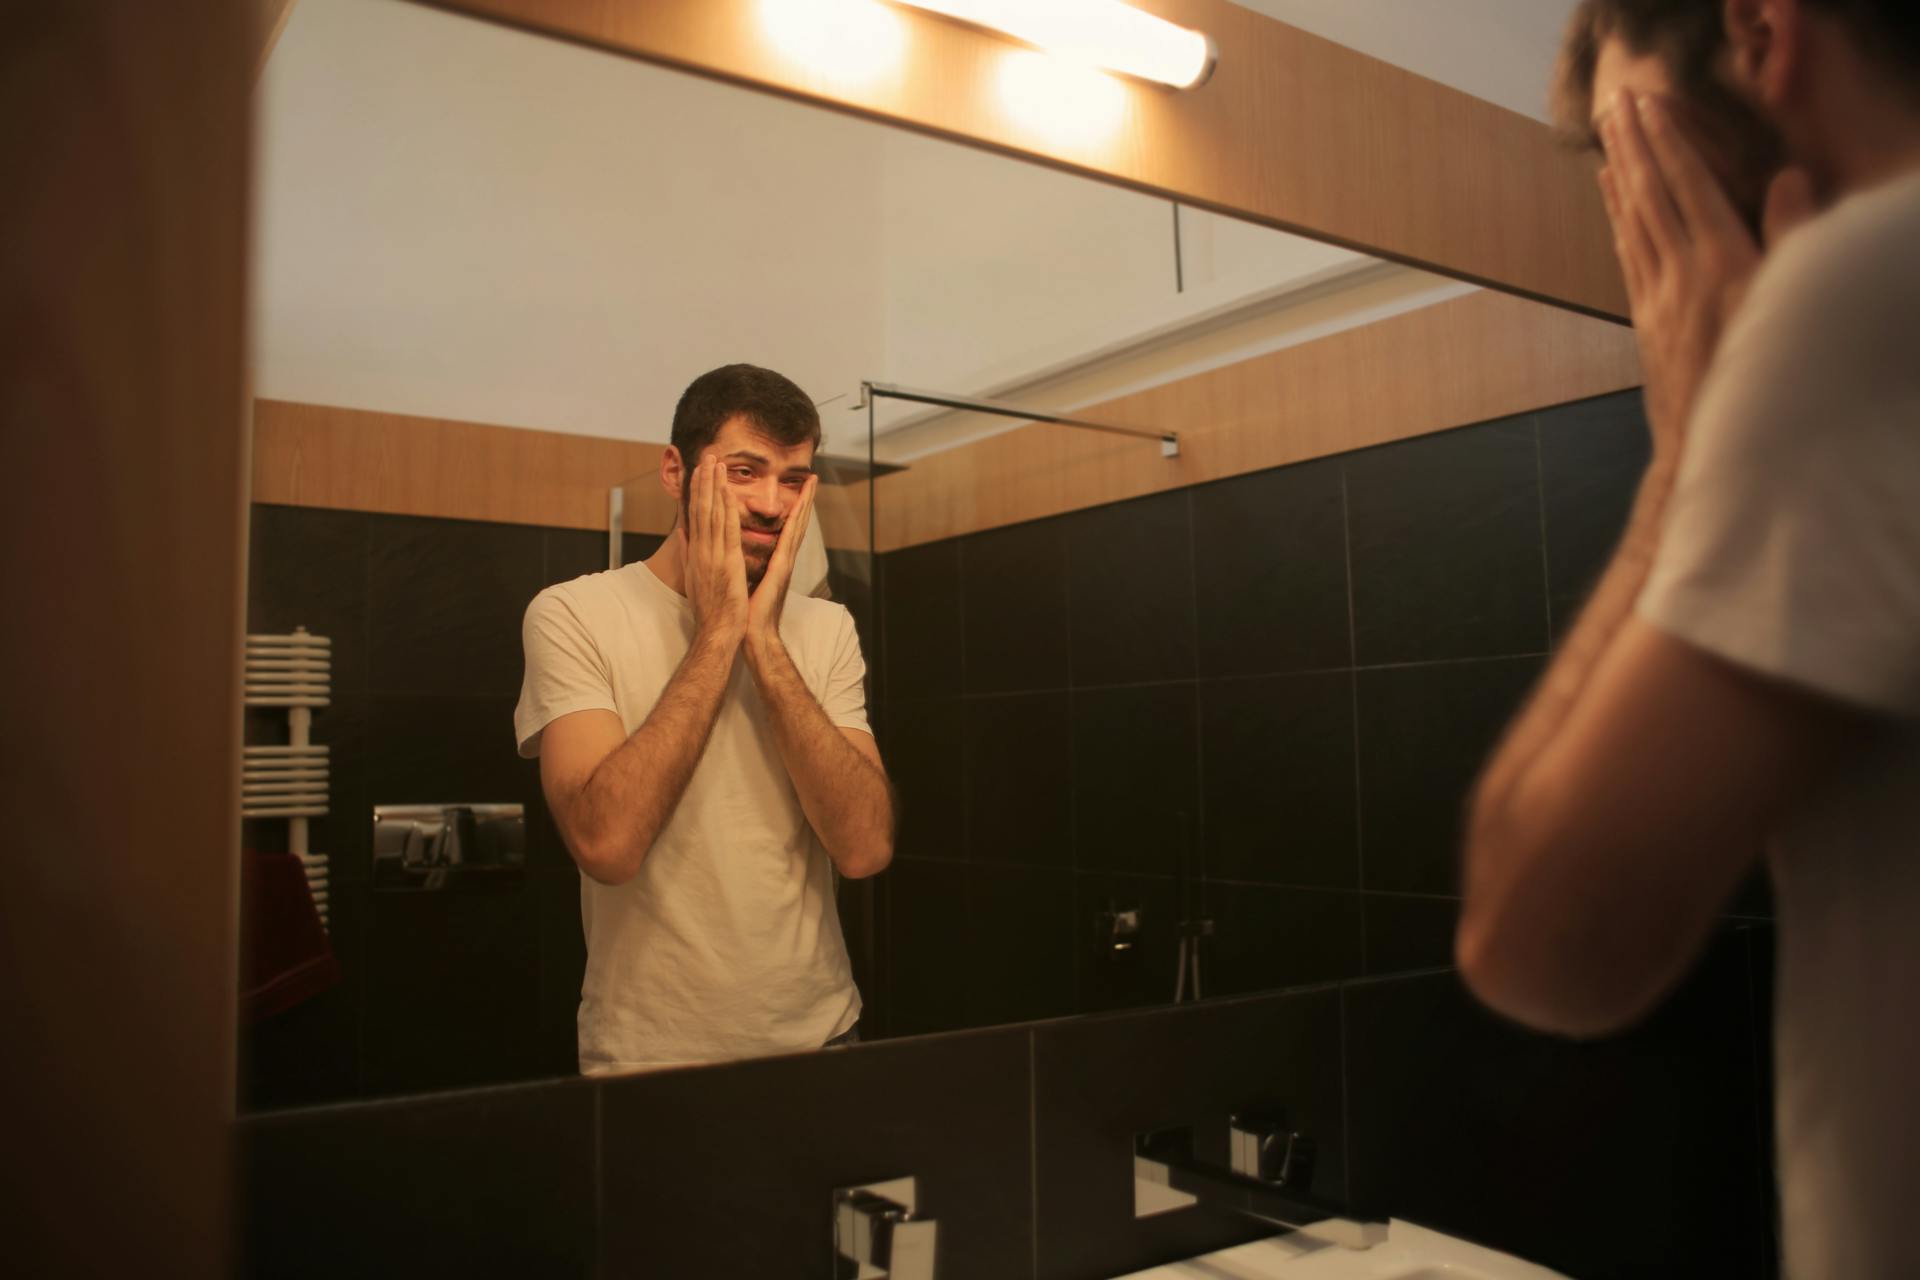 Ein müder Mann, der in einem Badezimmer in den Spiegel schaut | Quelle: Pexels